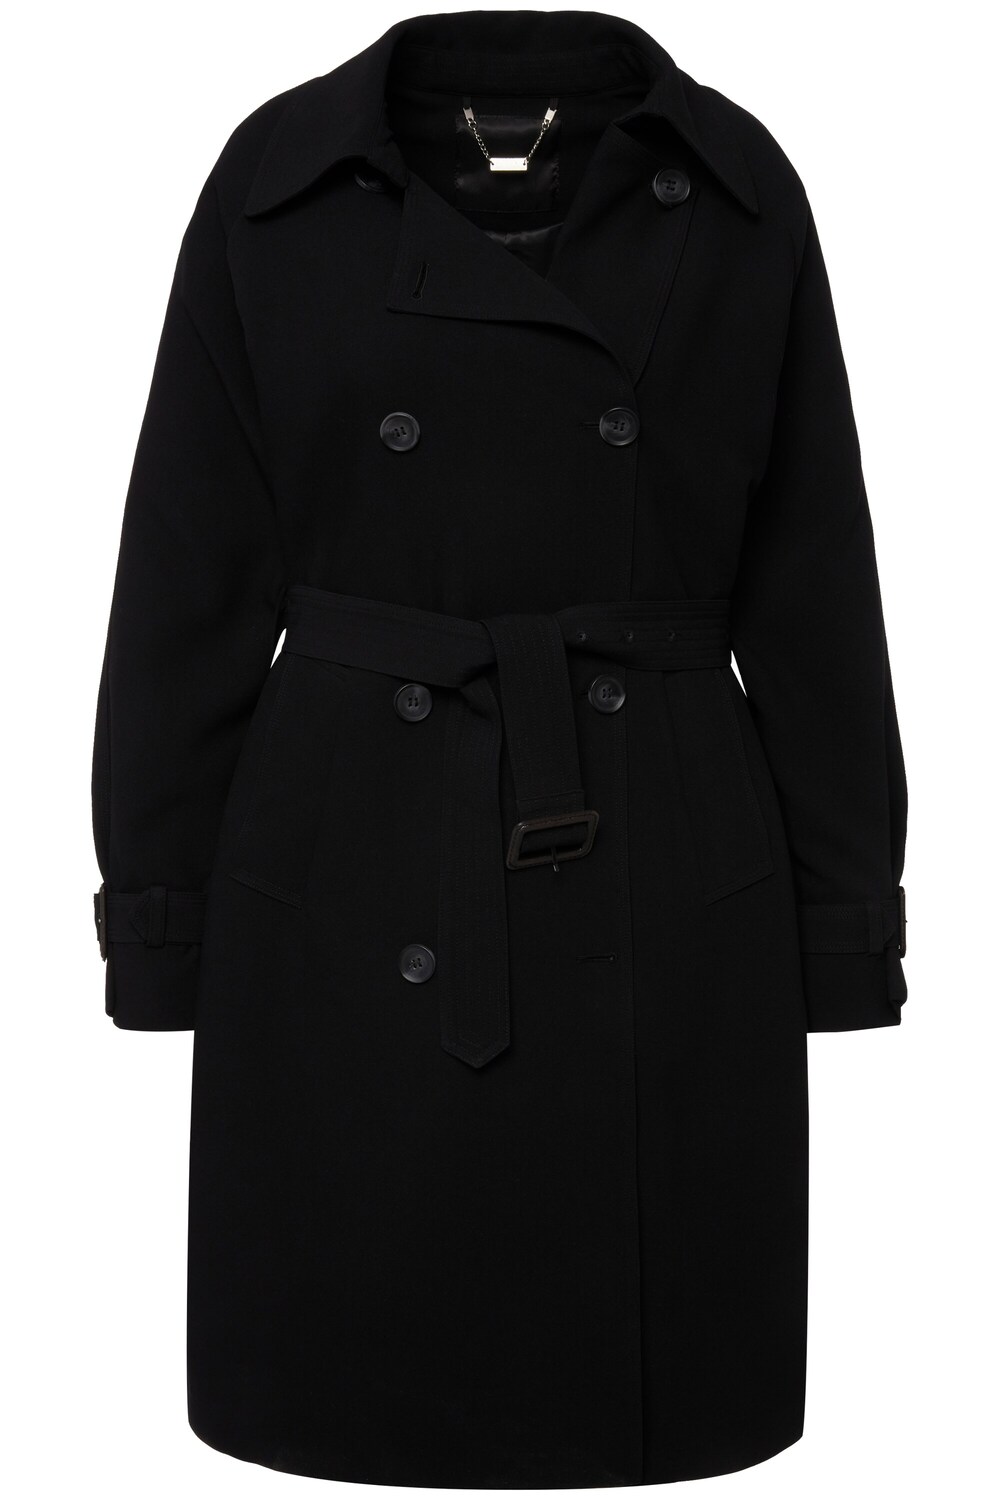 Межсезонное пальто Ulla Popken, черный межсезонное пальто ulla popken пестрый коричневый